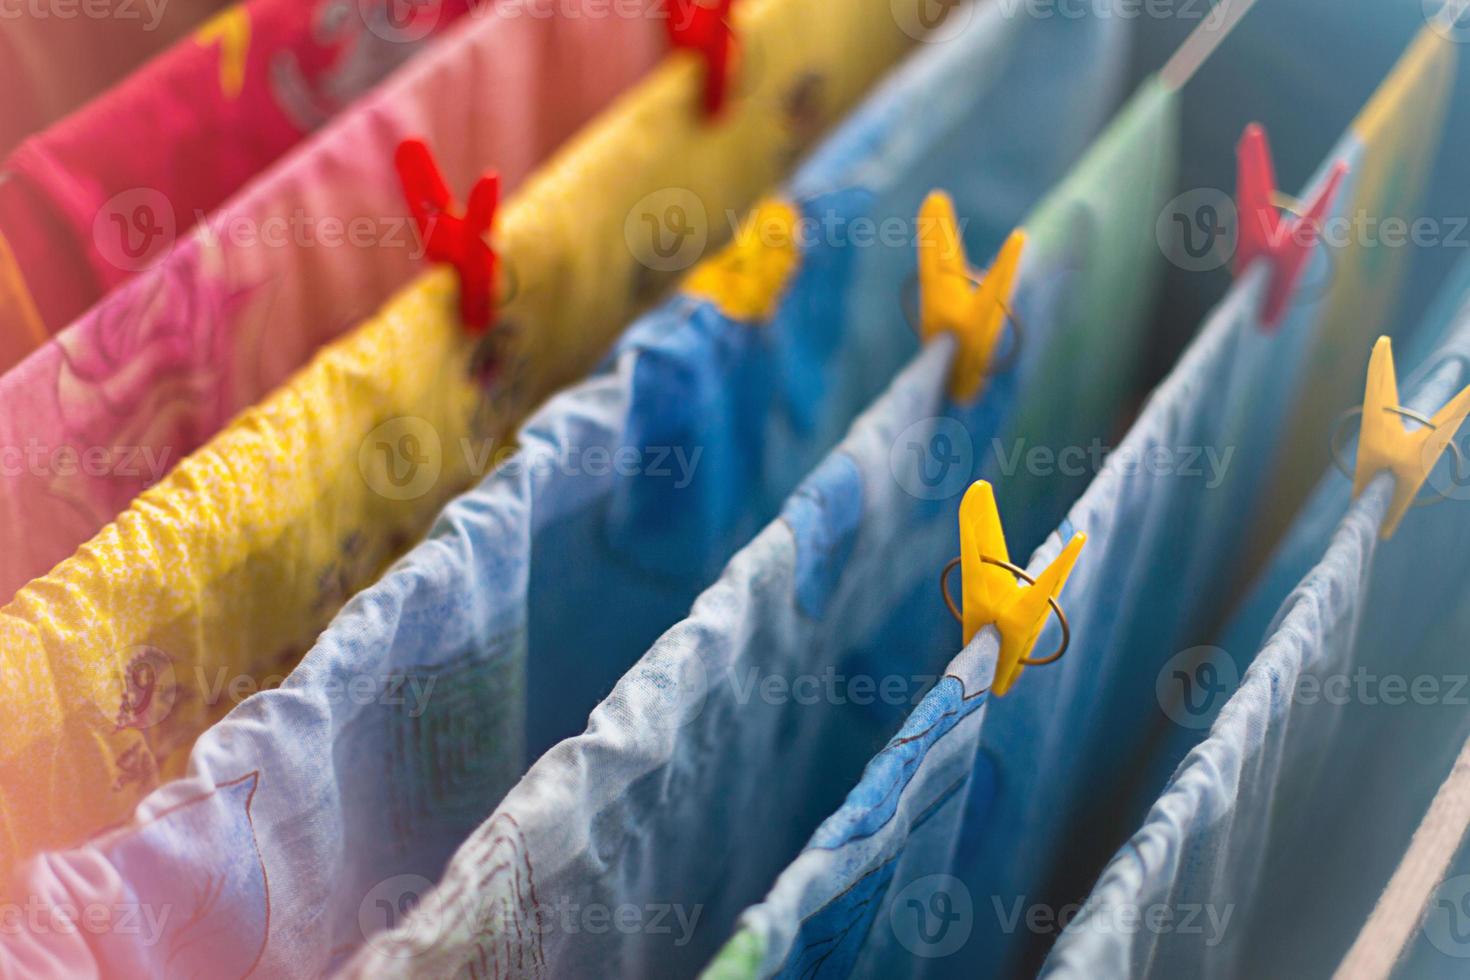 färgglada rena sängkläder och handdukar efter tvätt hängs på torktumlarens stänger och säkras med gula och röda klädnypor. allmänstädning, tvätttorkning, kompakt torktumlare för huset. foto